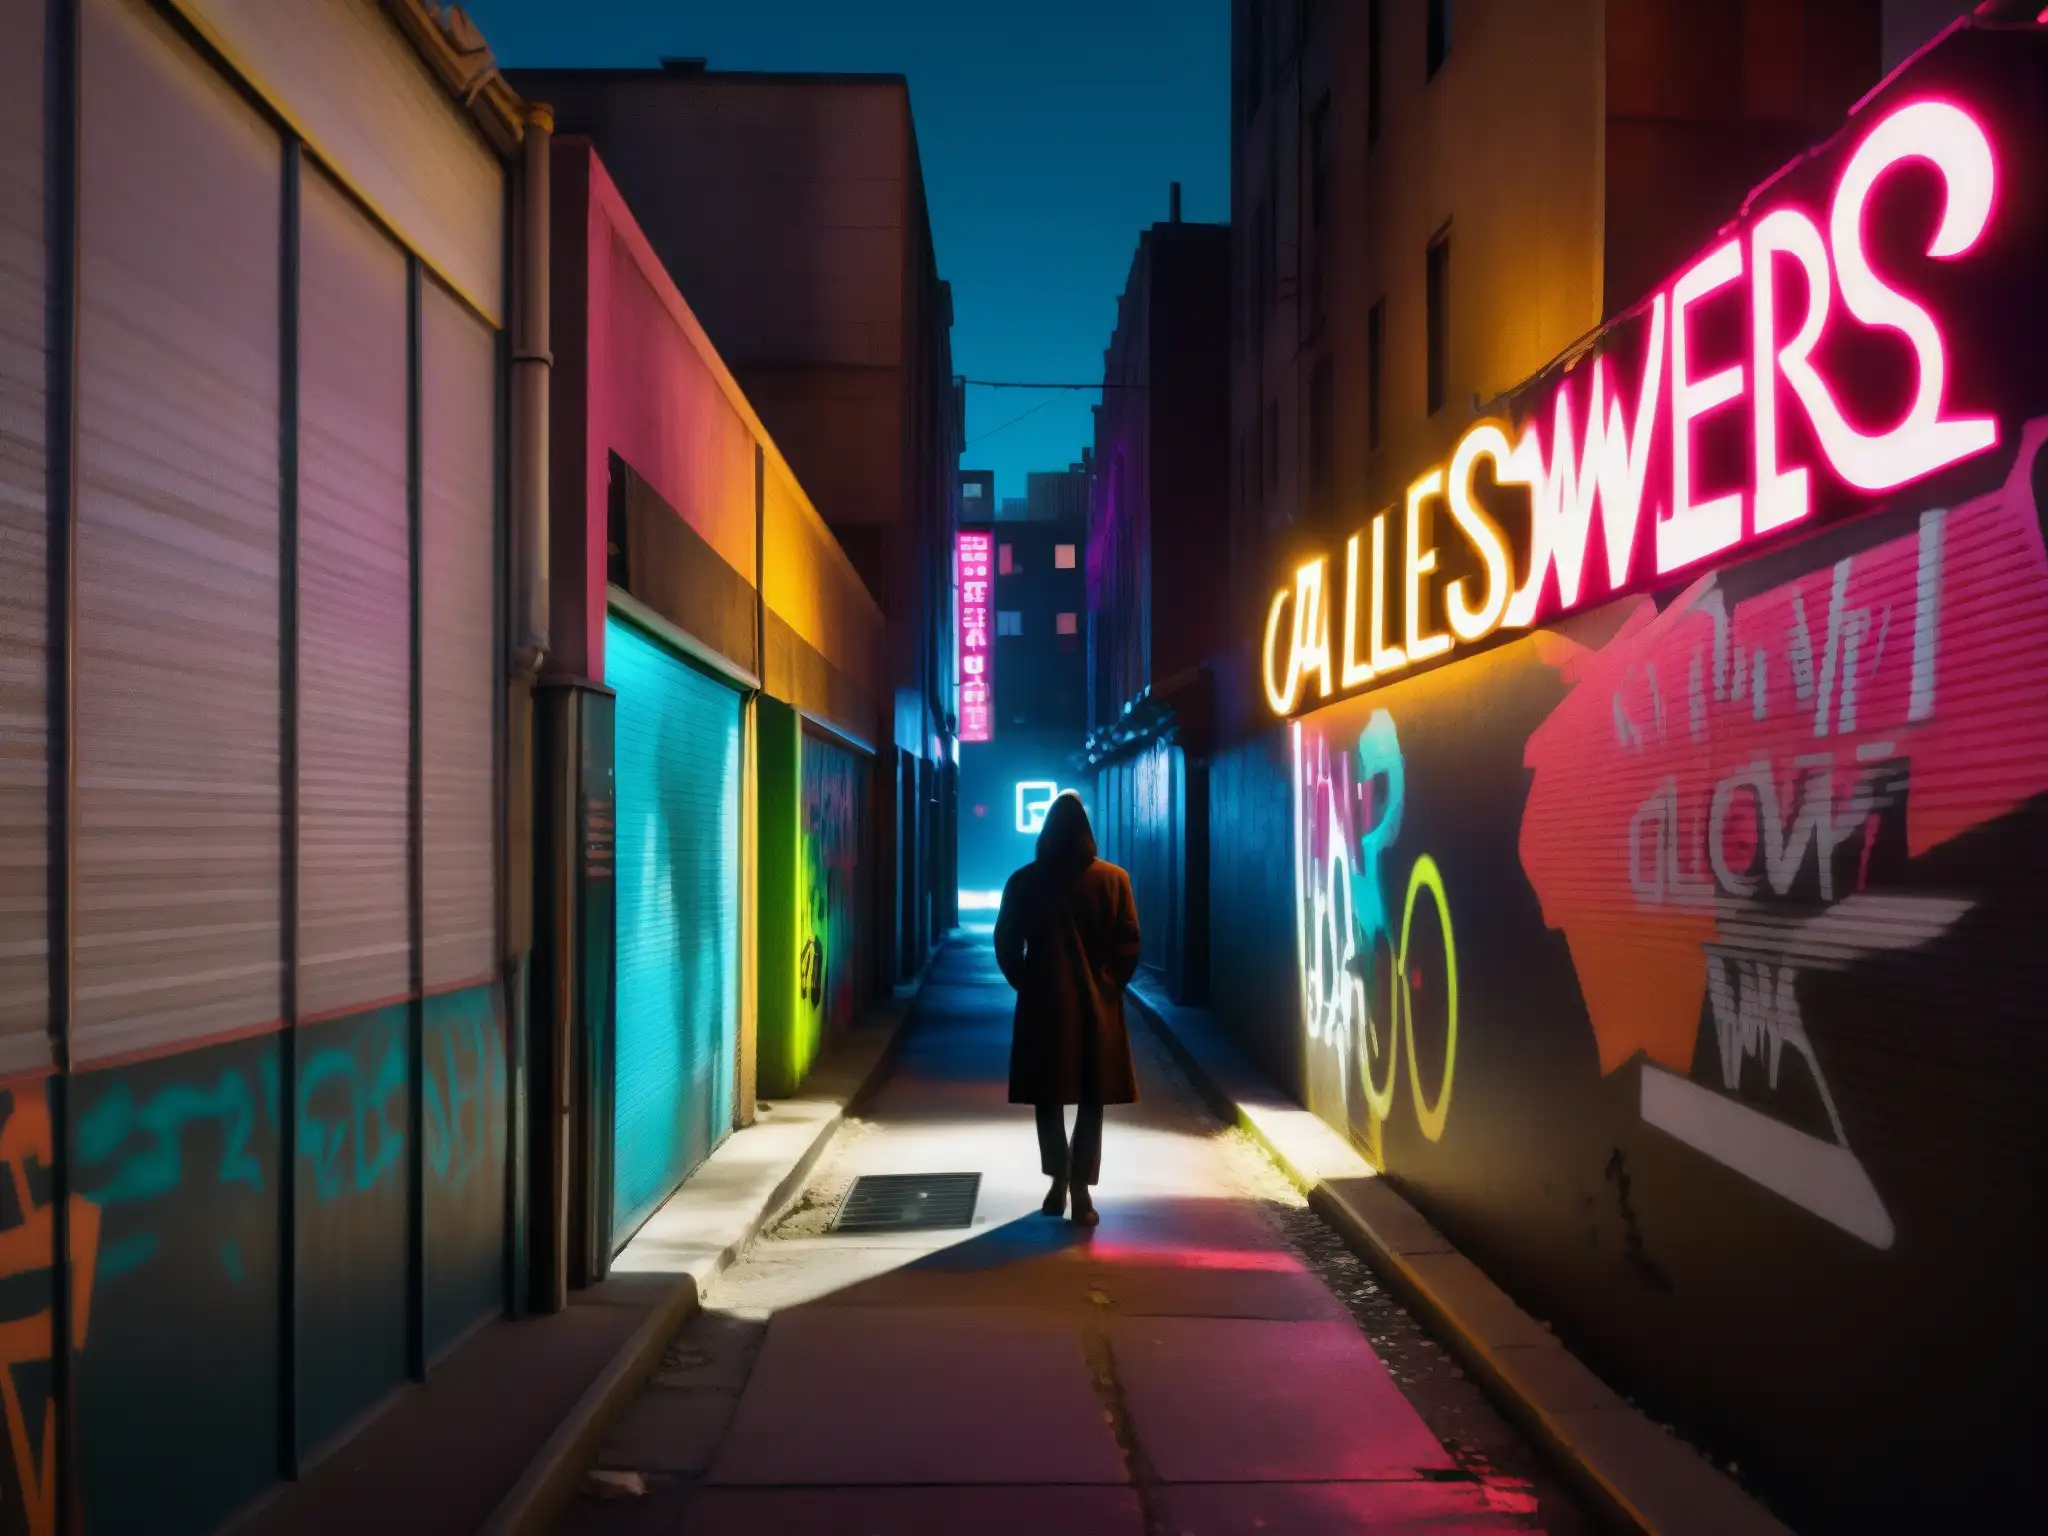 Enigmática imagen nocturna de un callejón urbano, con sombras, grafitis y una figura misteriosa, evocando mitos y leyendas urbanas contemporáneas